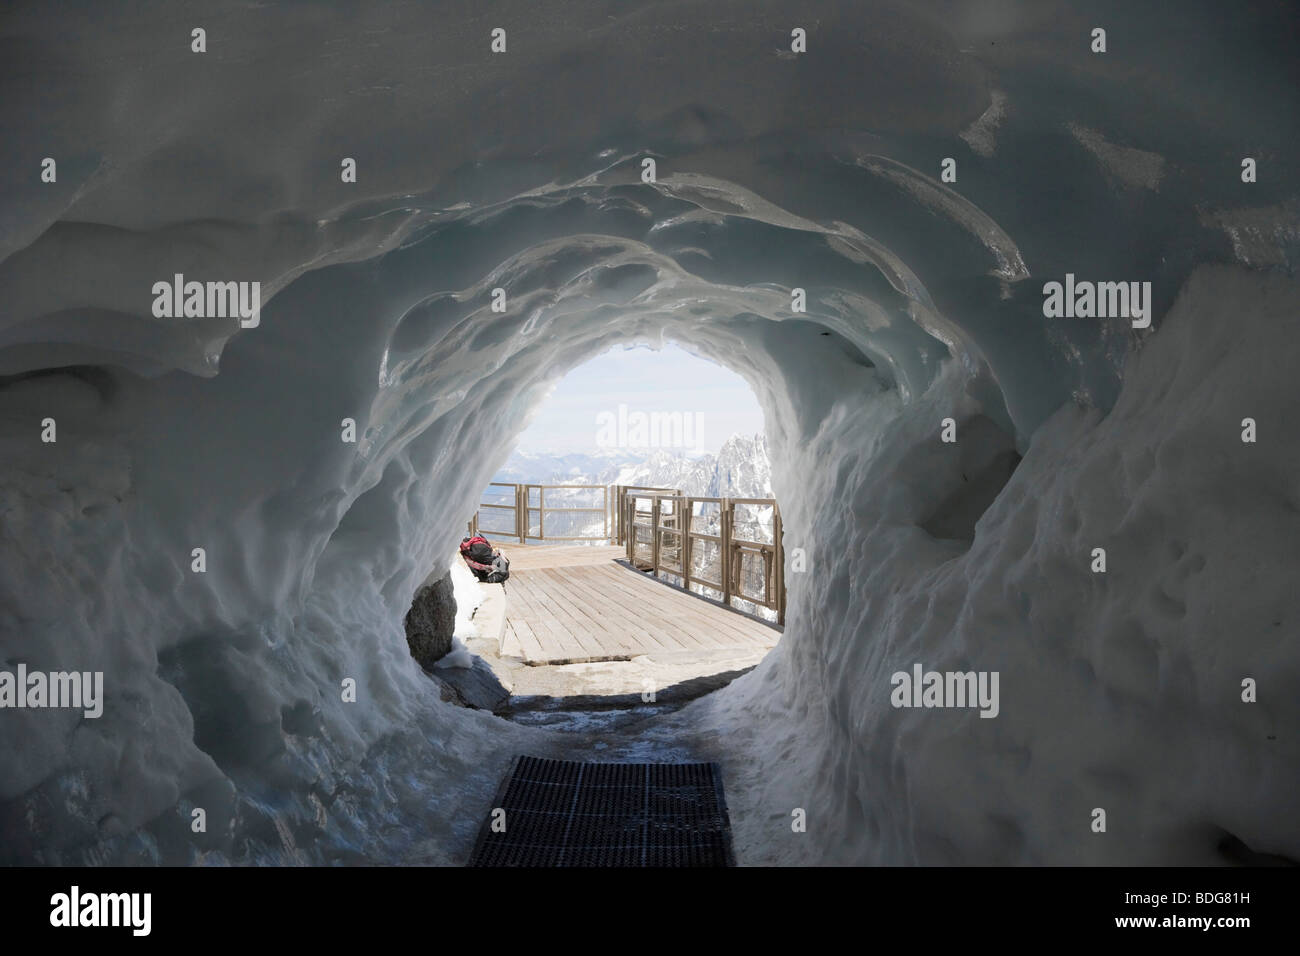 Le tunnel de glace en laissant l'Aiguille du Midi pour descendre dans la vallée blanche, Chamonix, Massif du Mont Blanc, Alpes, France, Euro Banque D'Images